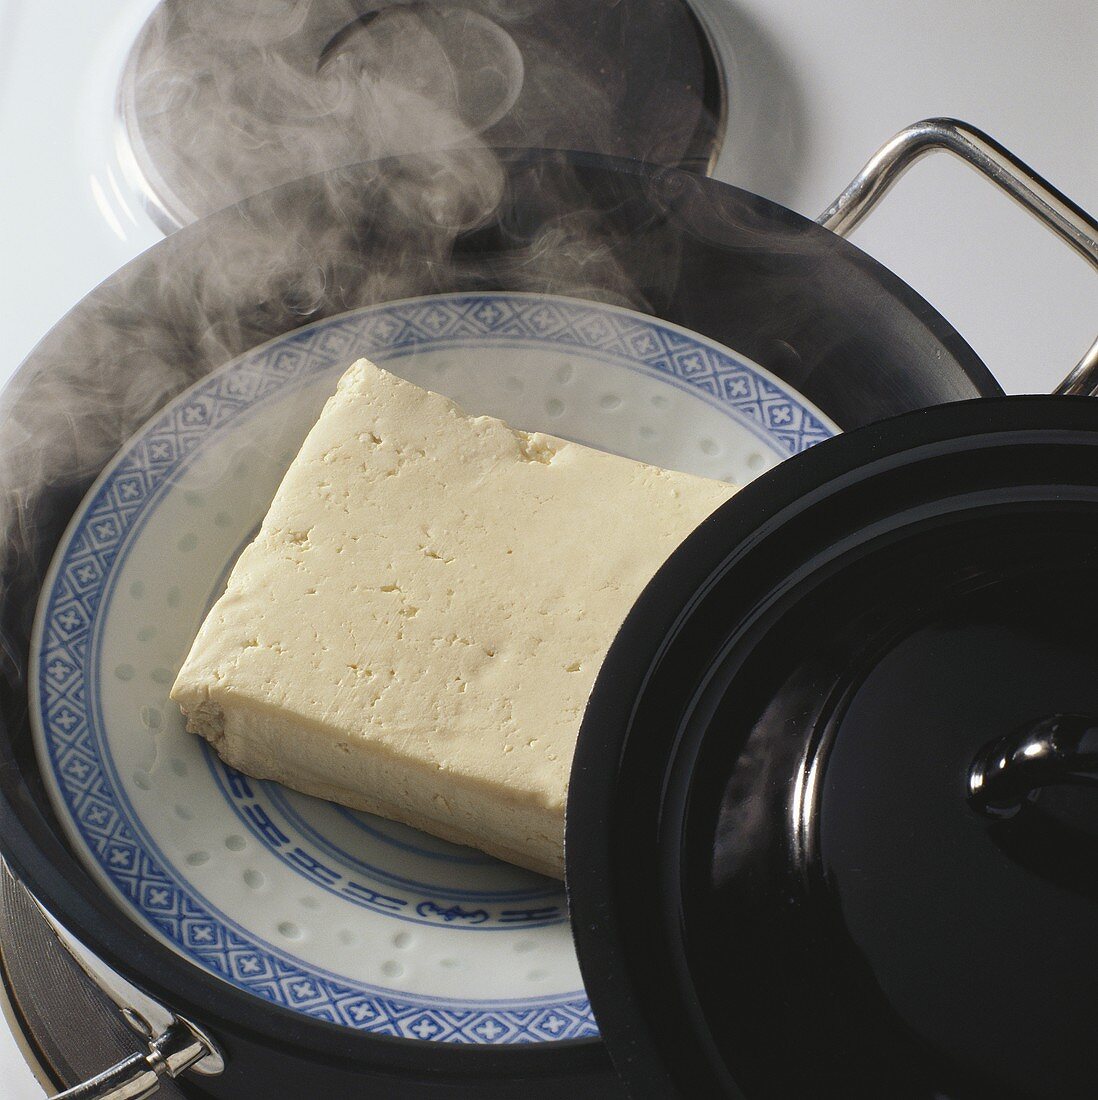 Gedämpfter Tofu auf Teller in Kochtopf mit heißem Wasser